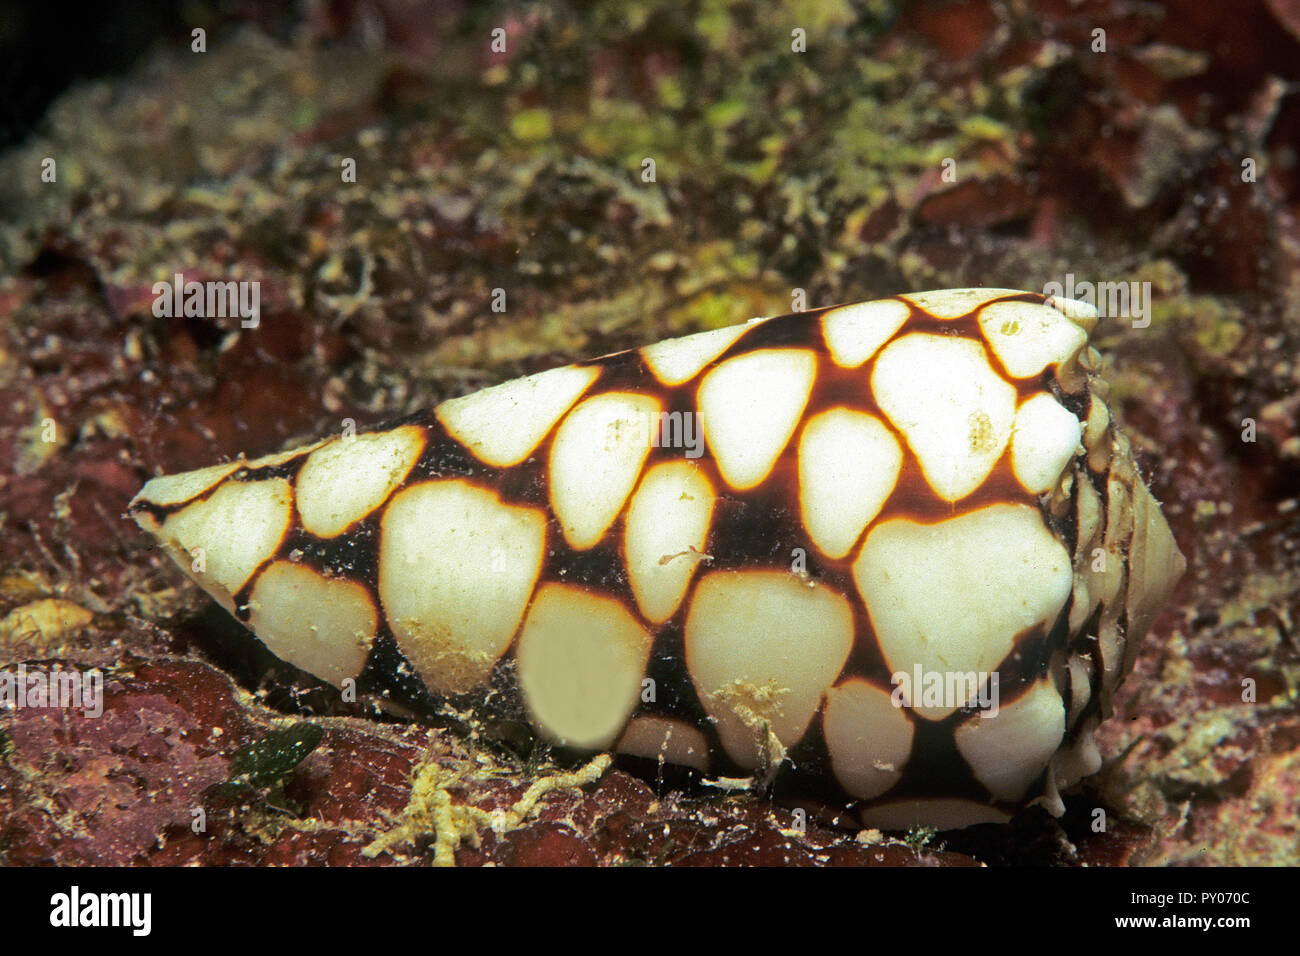 Cône Conus marmoreus (marbré), extrêmement toxique, mortel, Grande Barrière de Corail, Australie Banque D'Images